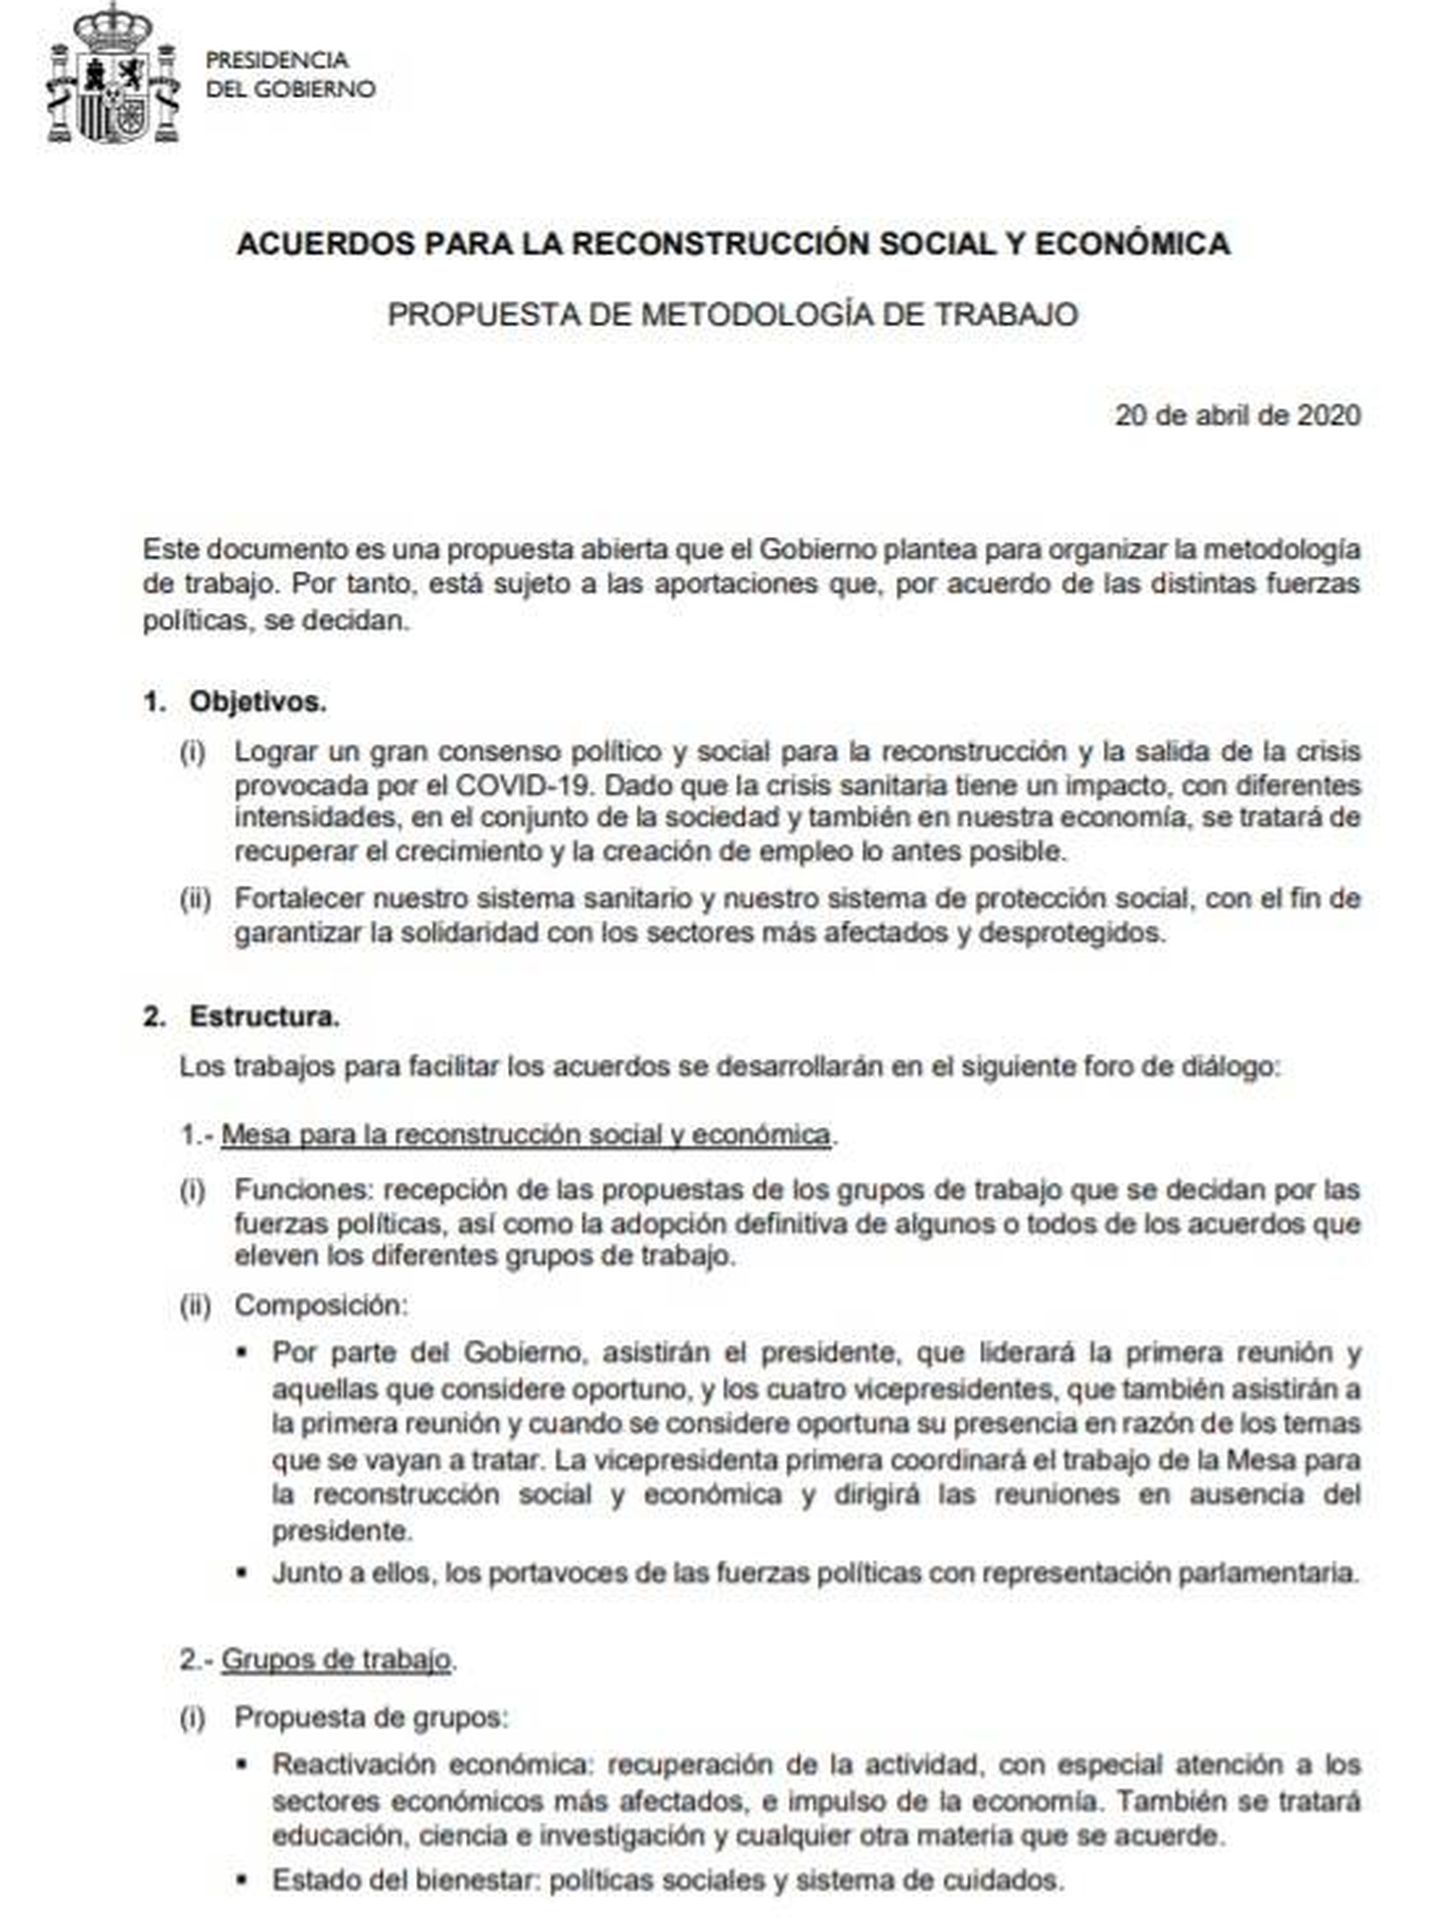 Consulte aquí en PDF la metodología de trabajo de la mesa para la reconstrucción propuesta por el Gobierno de Pedro Sánchez. 